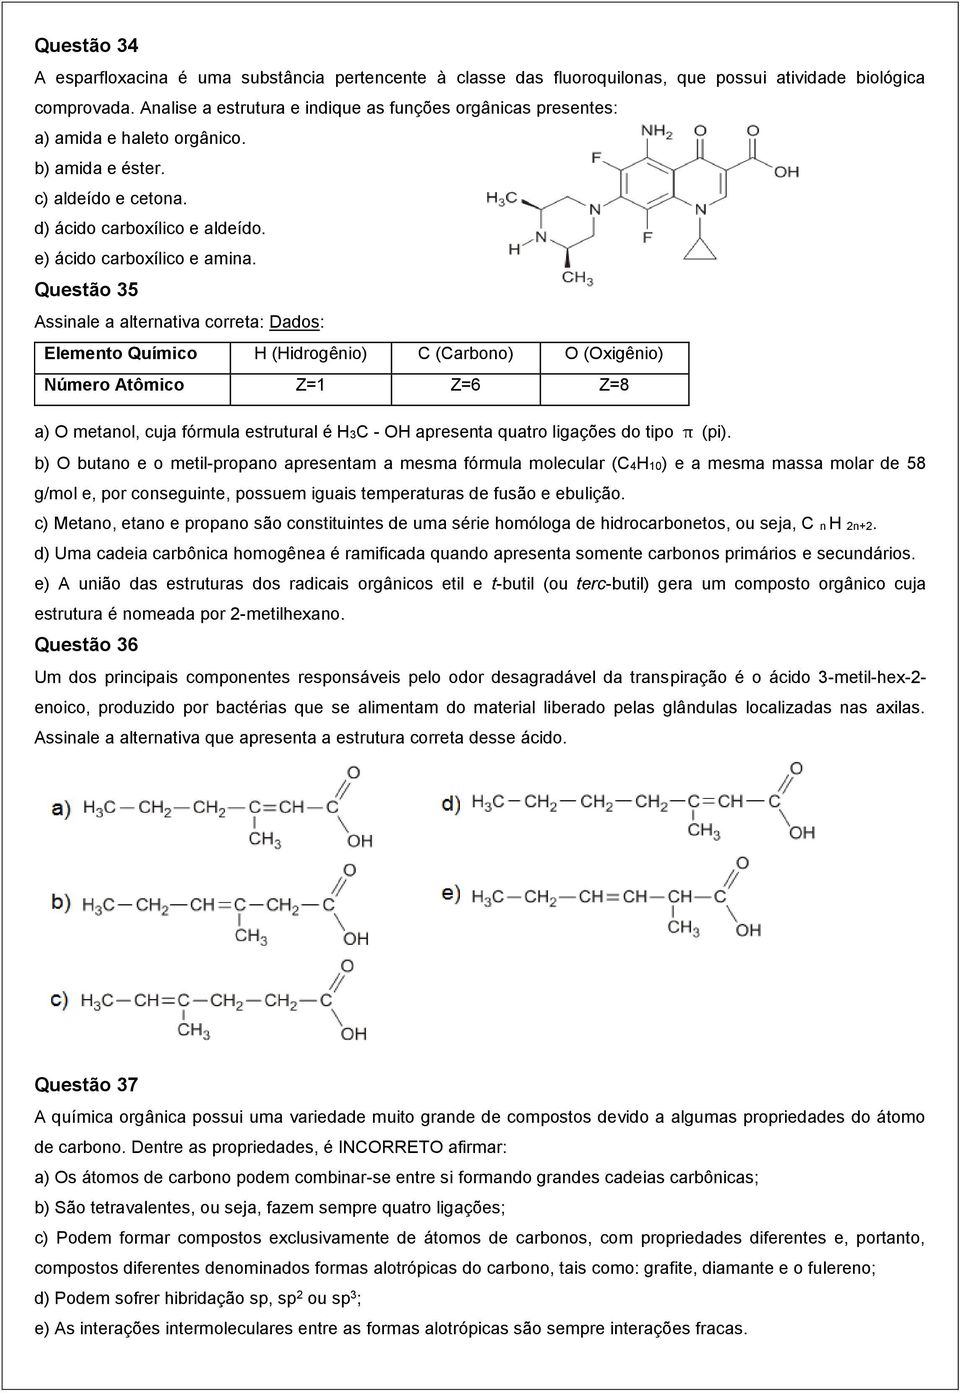 Questão 35 Assinale a alternativa correta: Dados: Elemento Químico H (Hidrogênio) C (Carbono) O (Oxigênio) Número Atômico Z=1 Z=6 Z=8 a) O metanol, cuja fórmula estrutural é H3C - OH apresenta quatro